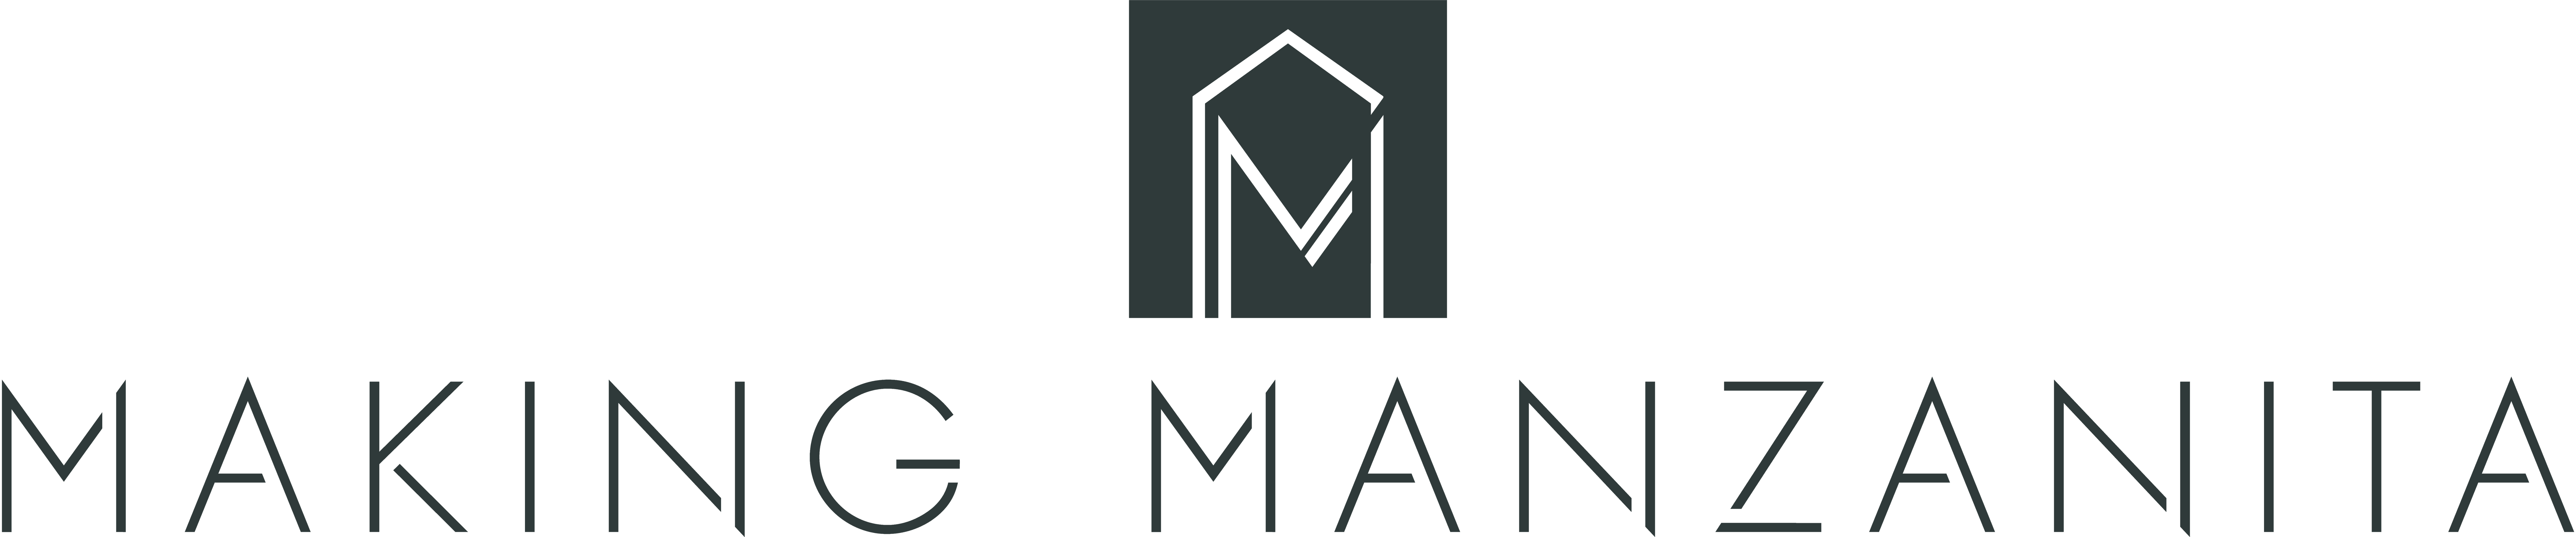 Making Manzanita logo